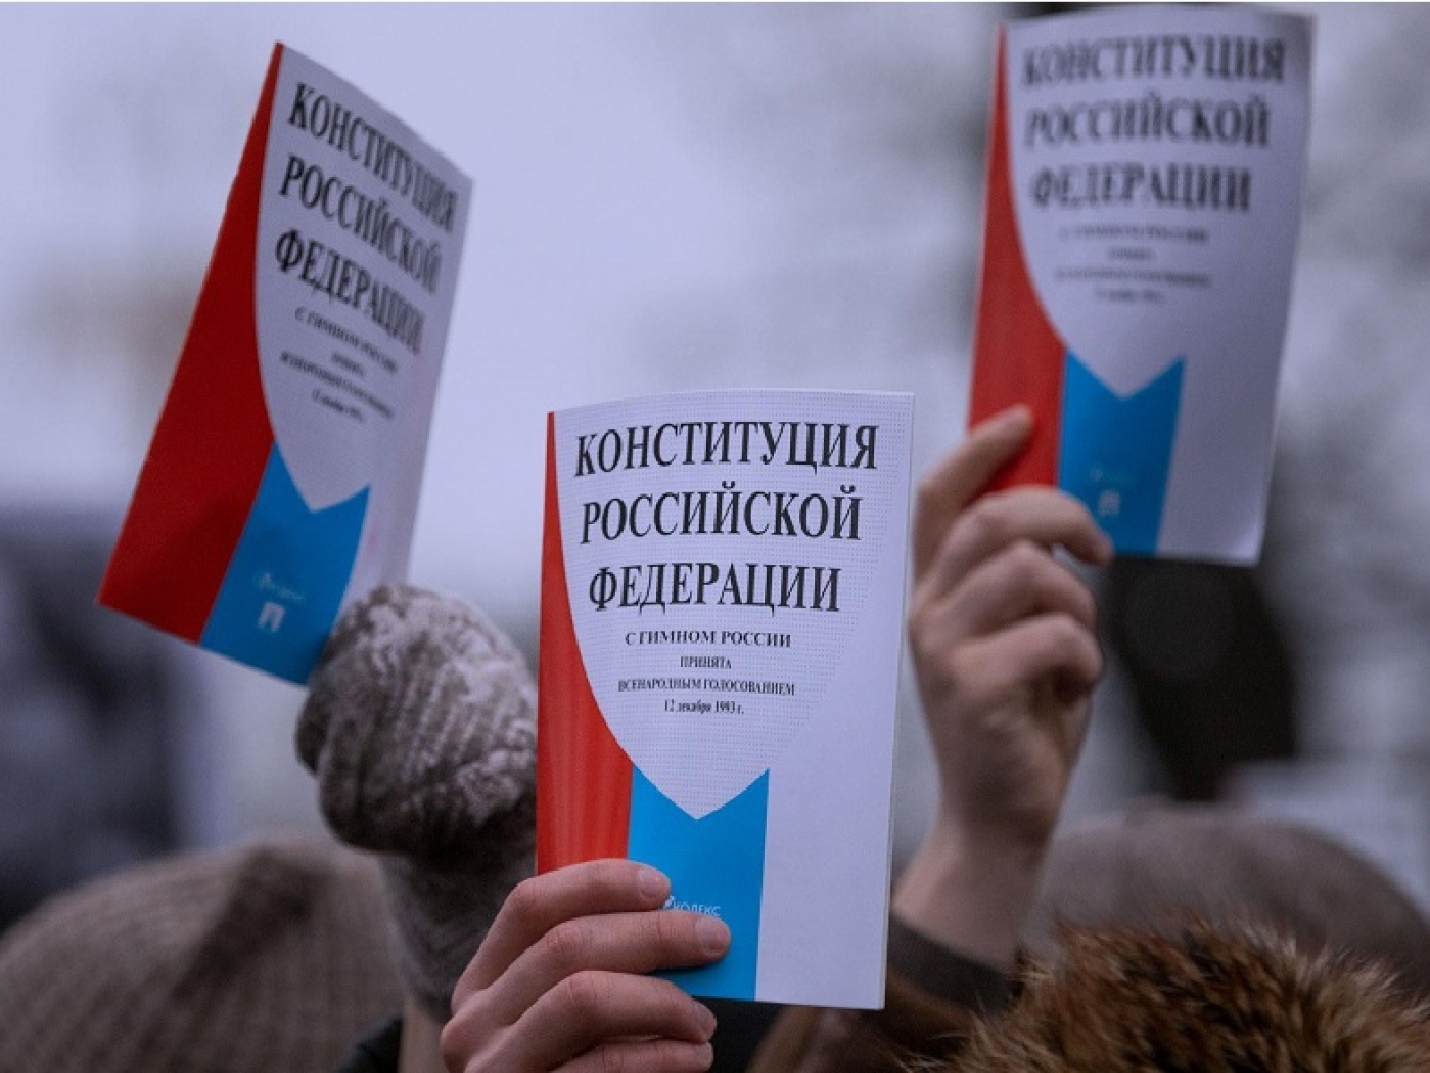 ЦИК России сегодня подведет официальные итоги голосования по поправкам